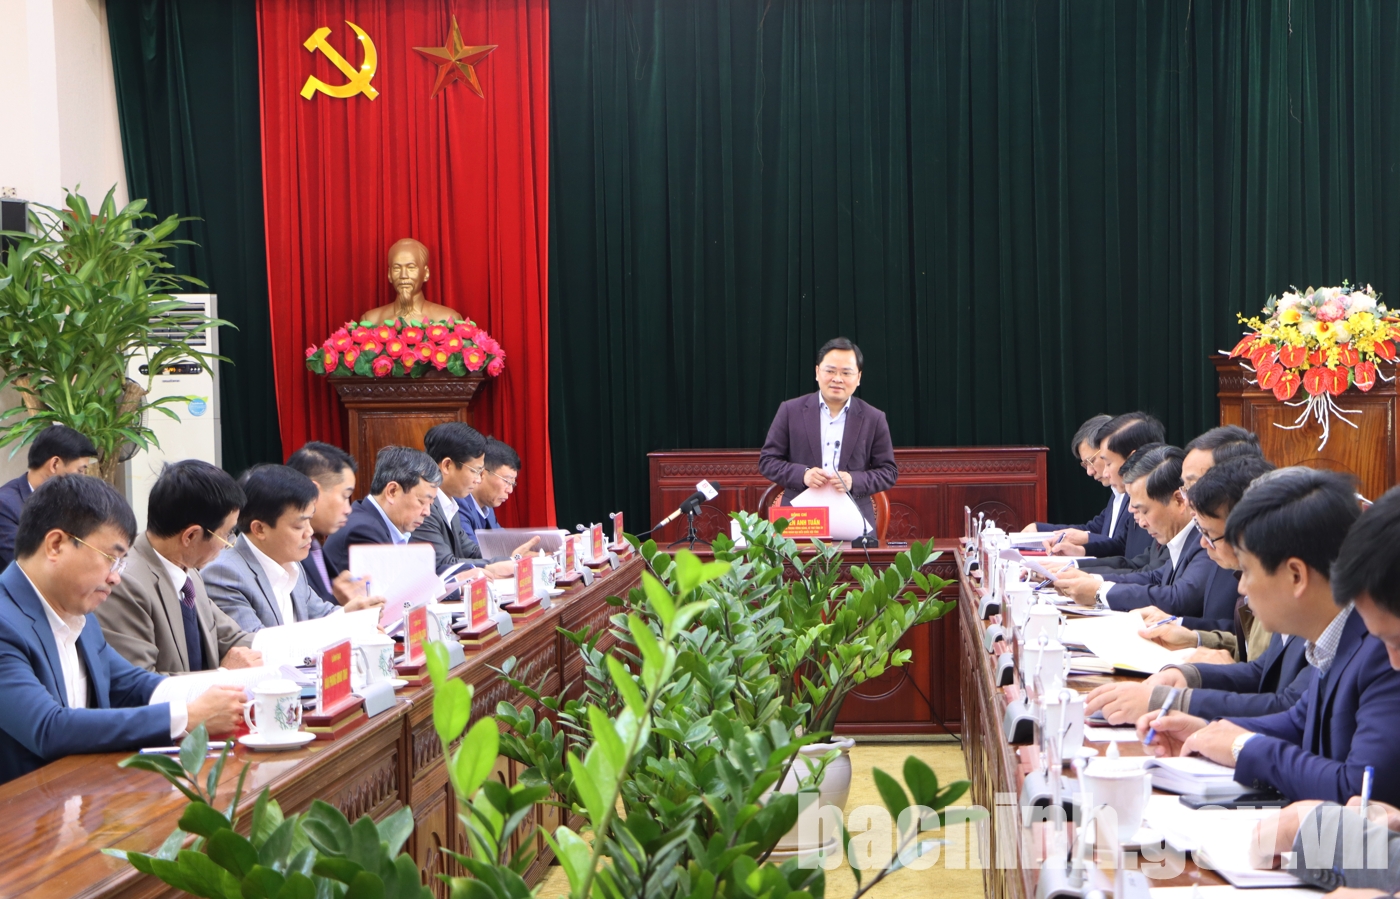 Bí thư Tỉnh ủy Nguyễn Anh Tuấn làm việc với thành phố Bắc Ninh về dự án cầu Như Nguyệt